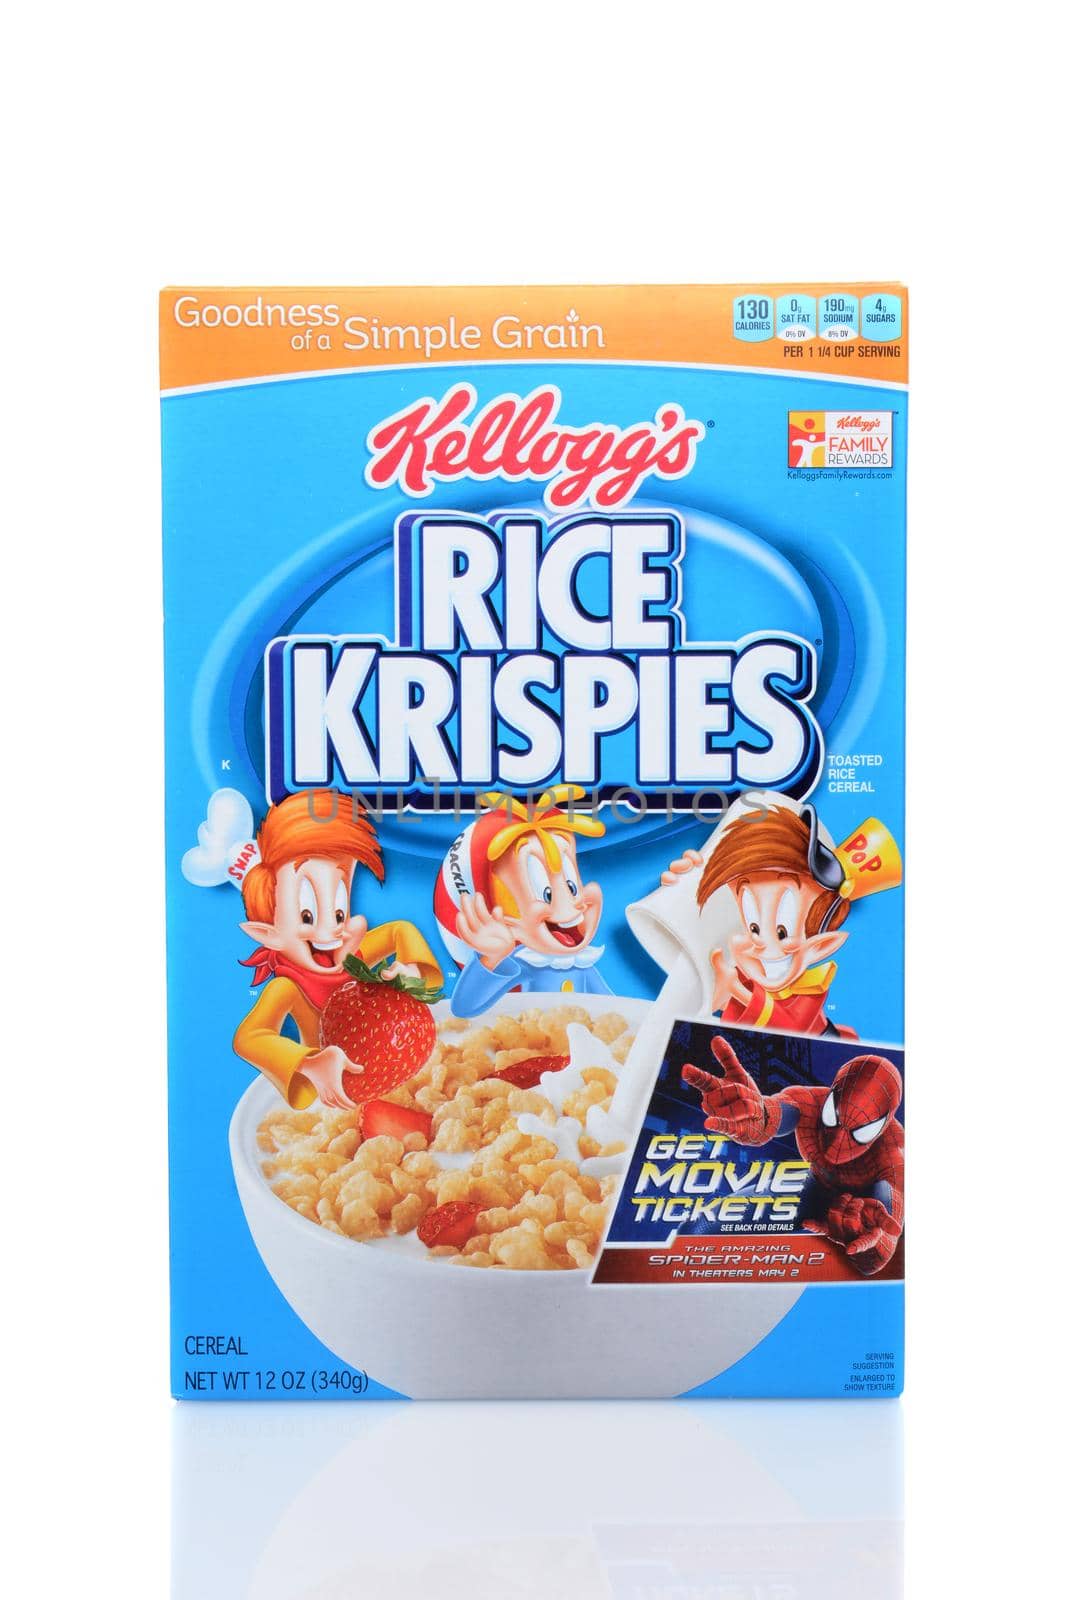 Kellogg's Rice Krispies by sCukrov